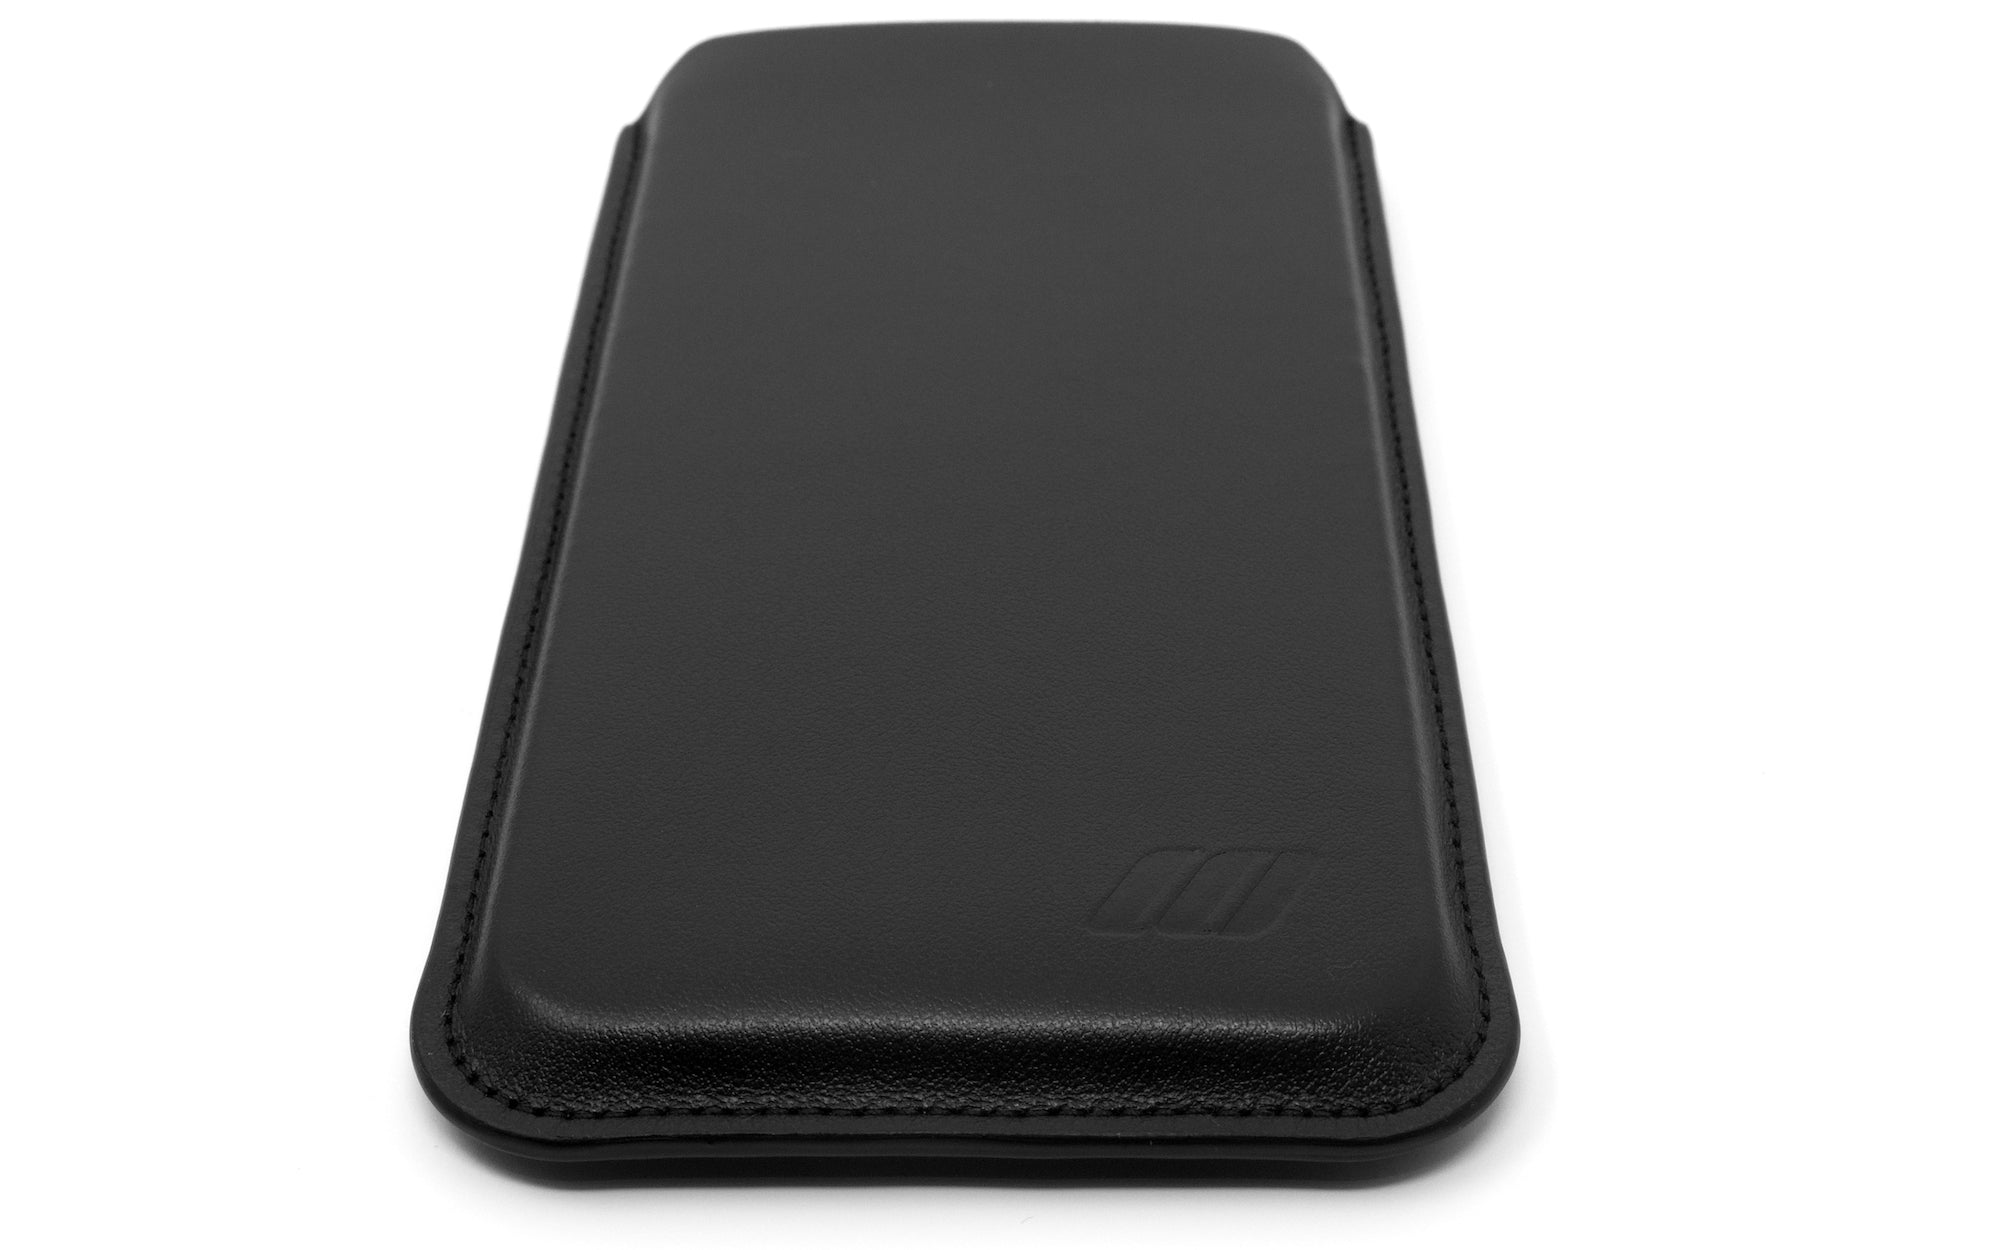 Apple iPhone 13 Mini Leather Sleeve Case - Skinny Fit - Black